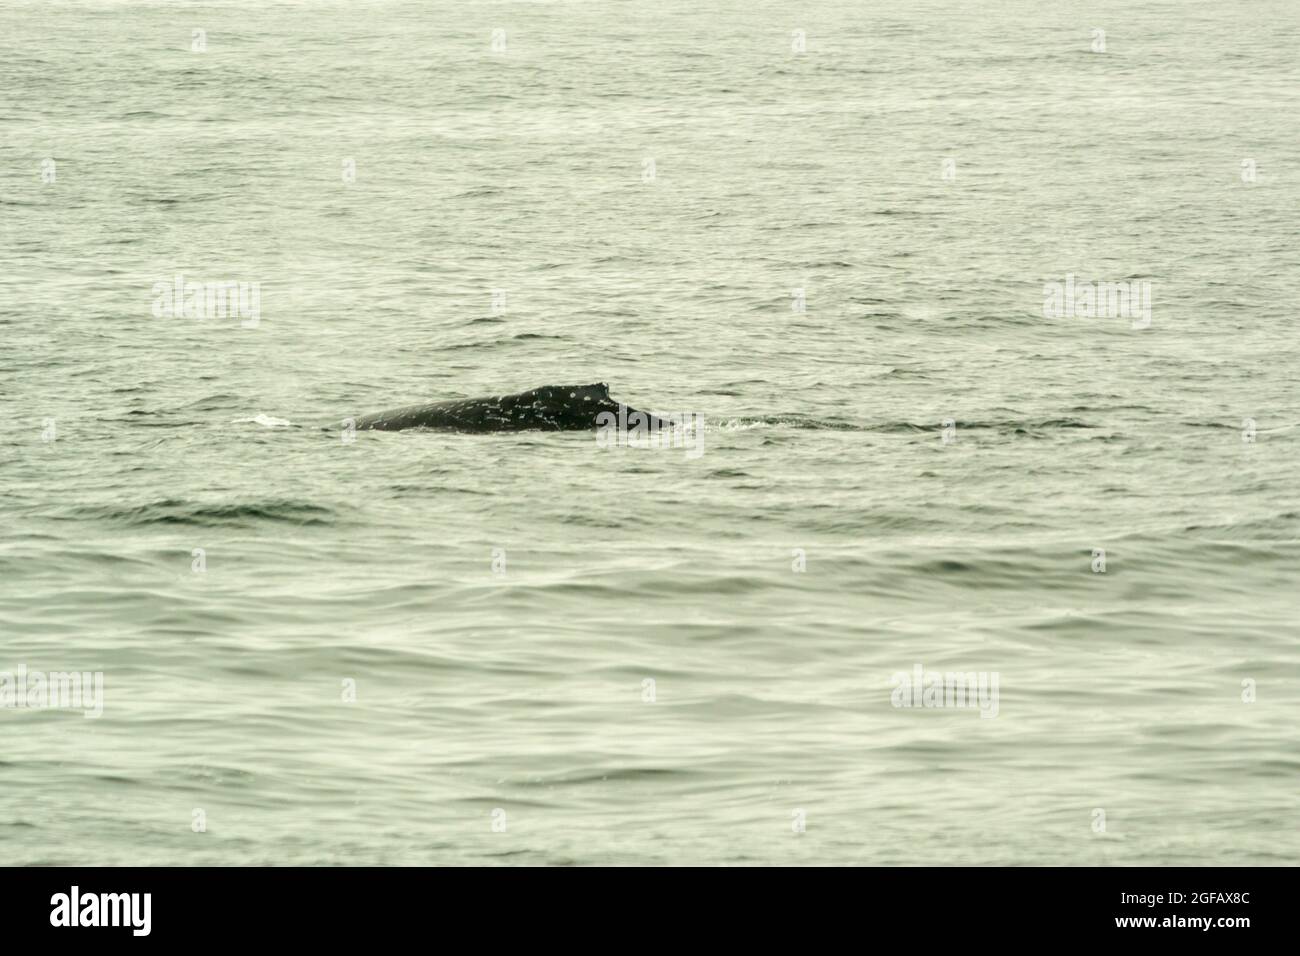 Hutte d'une baleine à bosse sauvage nageant dans l'océan Pacifique, dans la baie de Monterey, en Californie, en août. Jour couvert, ciel gris et mer. Banque D'Images